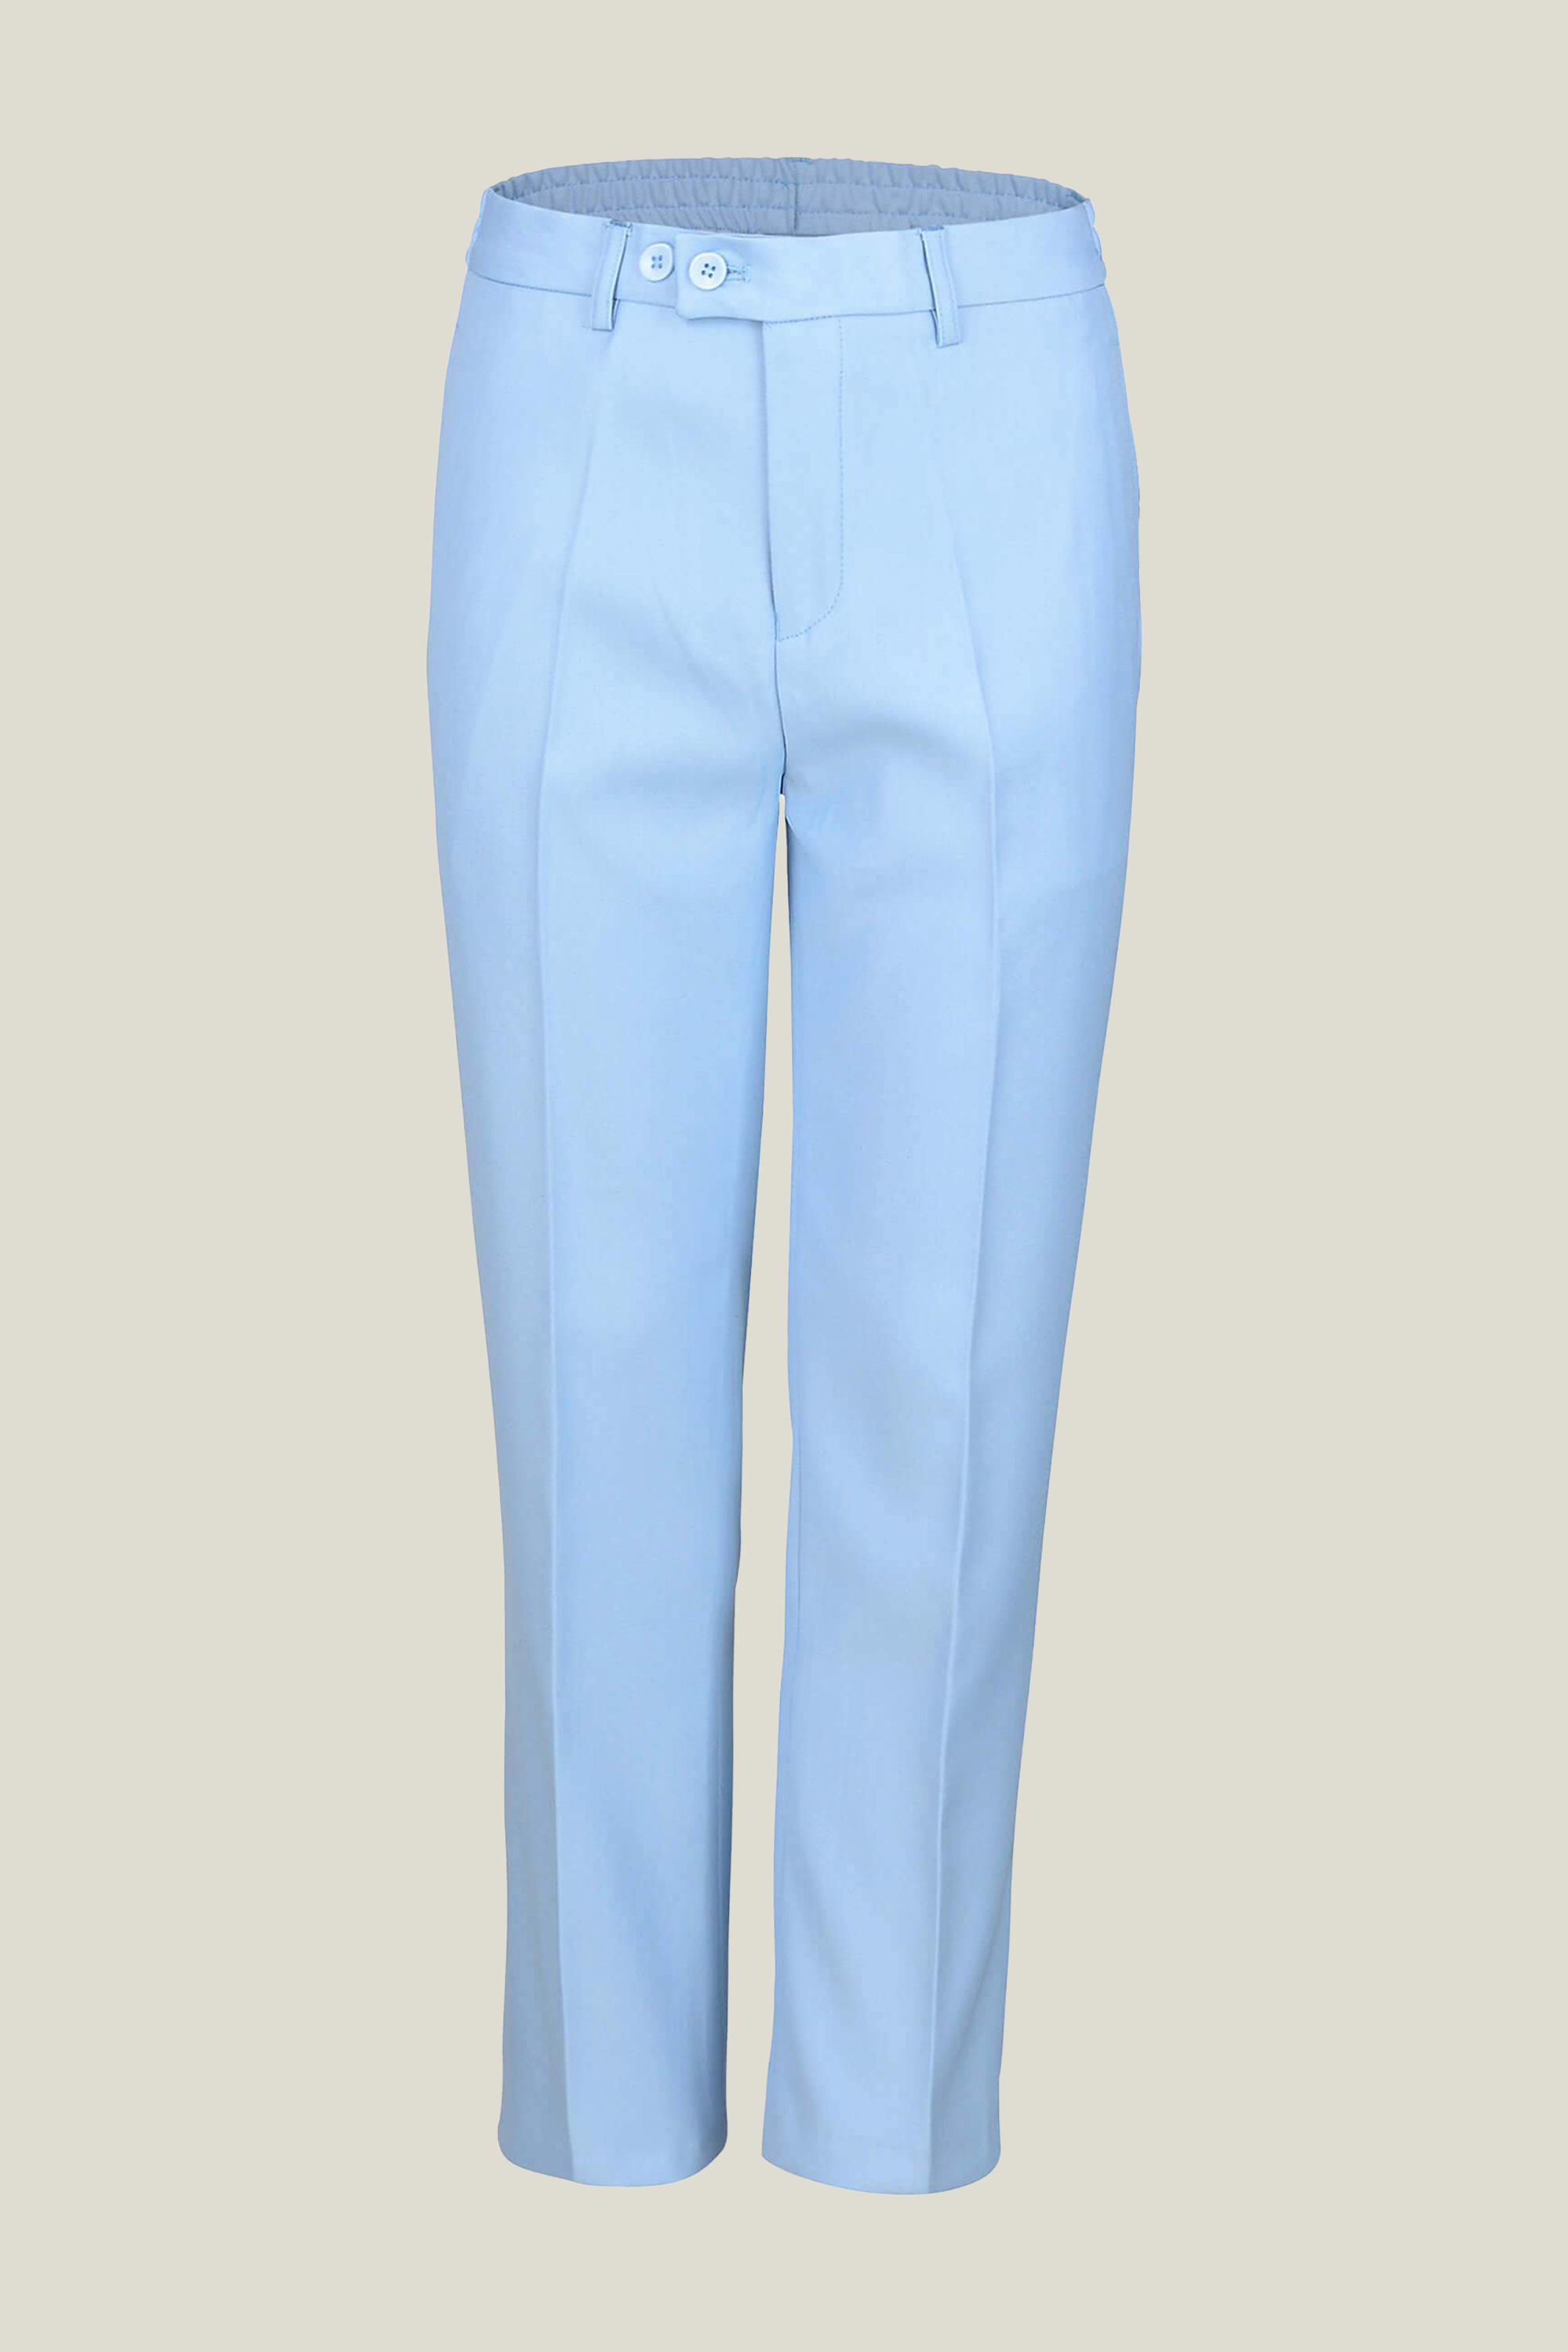 Boys Sky Blue Trousers - Suit Lab